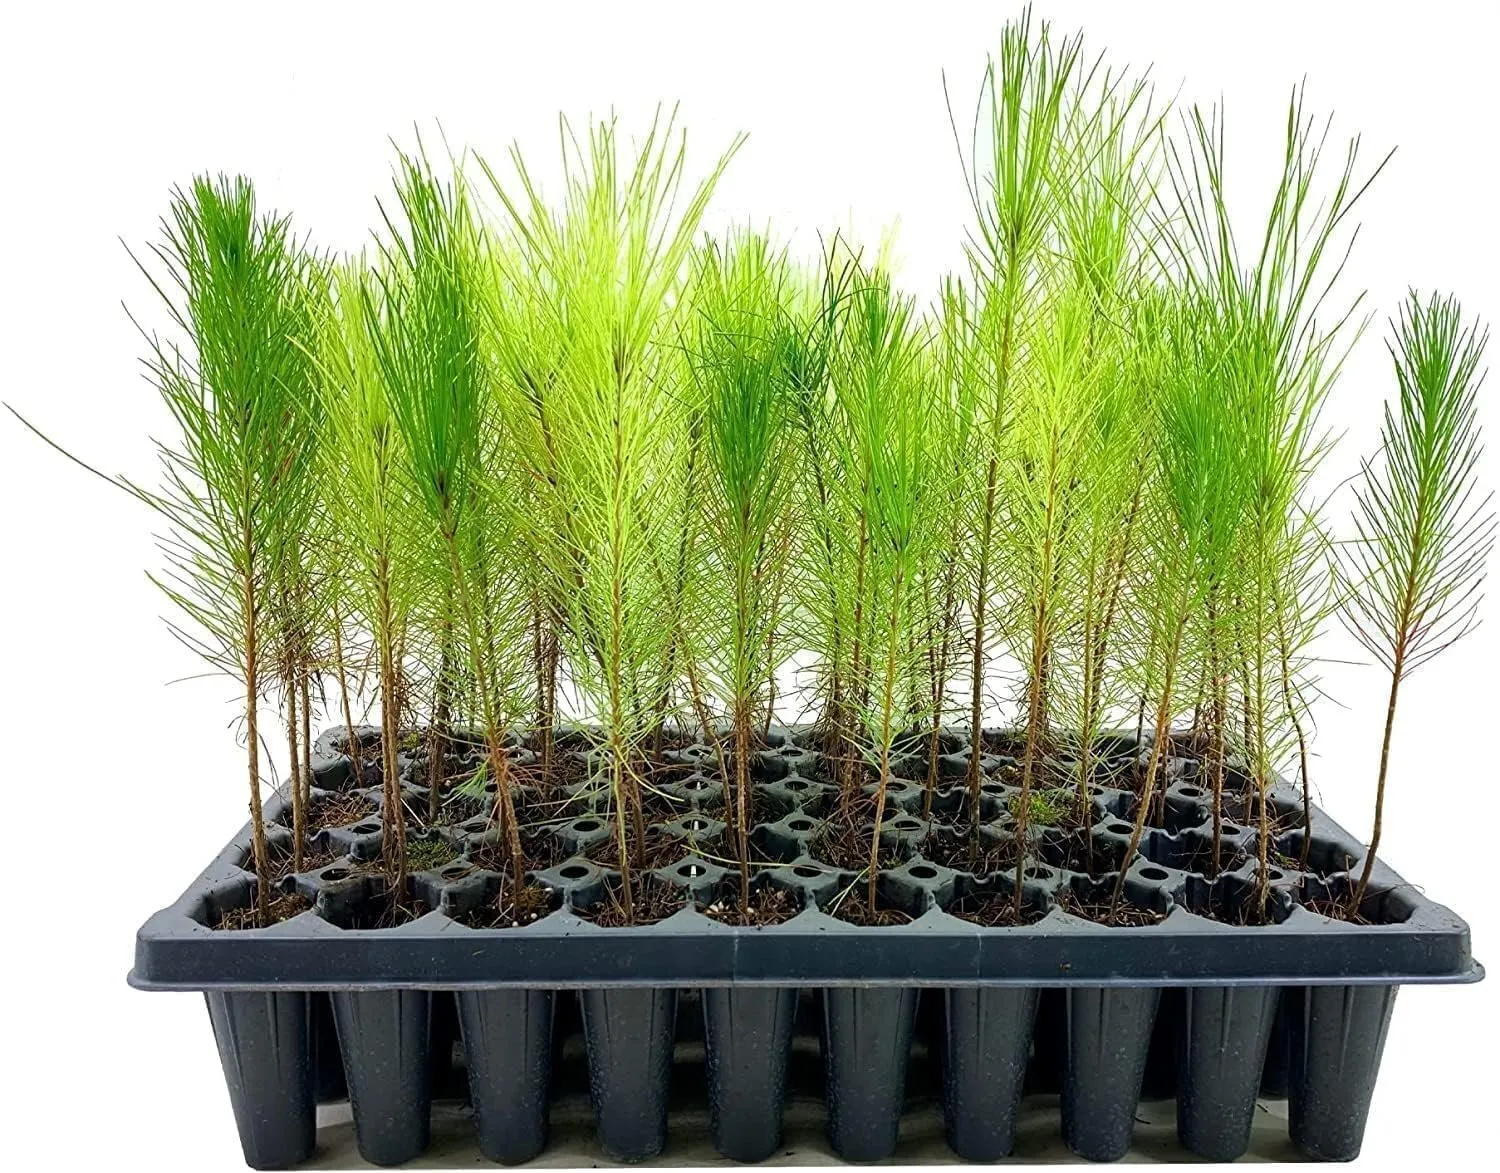 Loblolly Pine Tree Plants Live Seedlings Pinus Taeda Fast-Growing Trees - $40.77